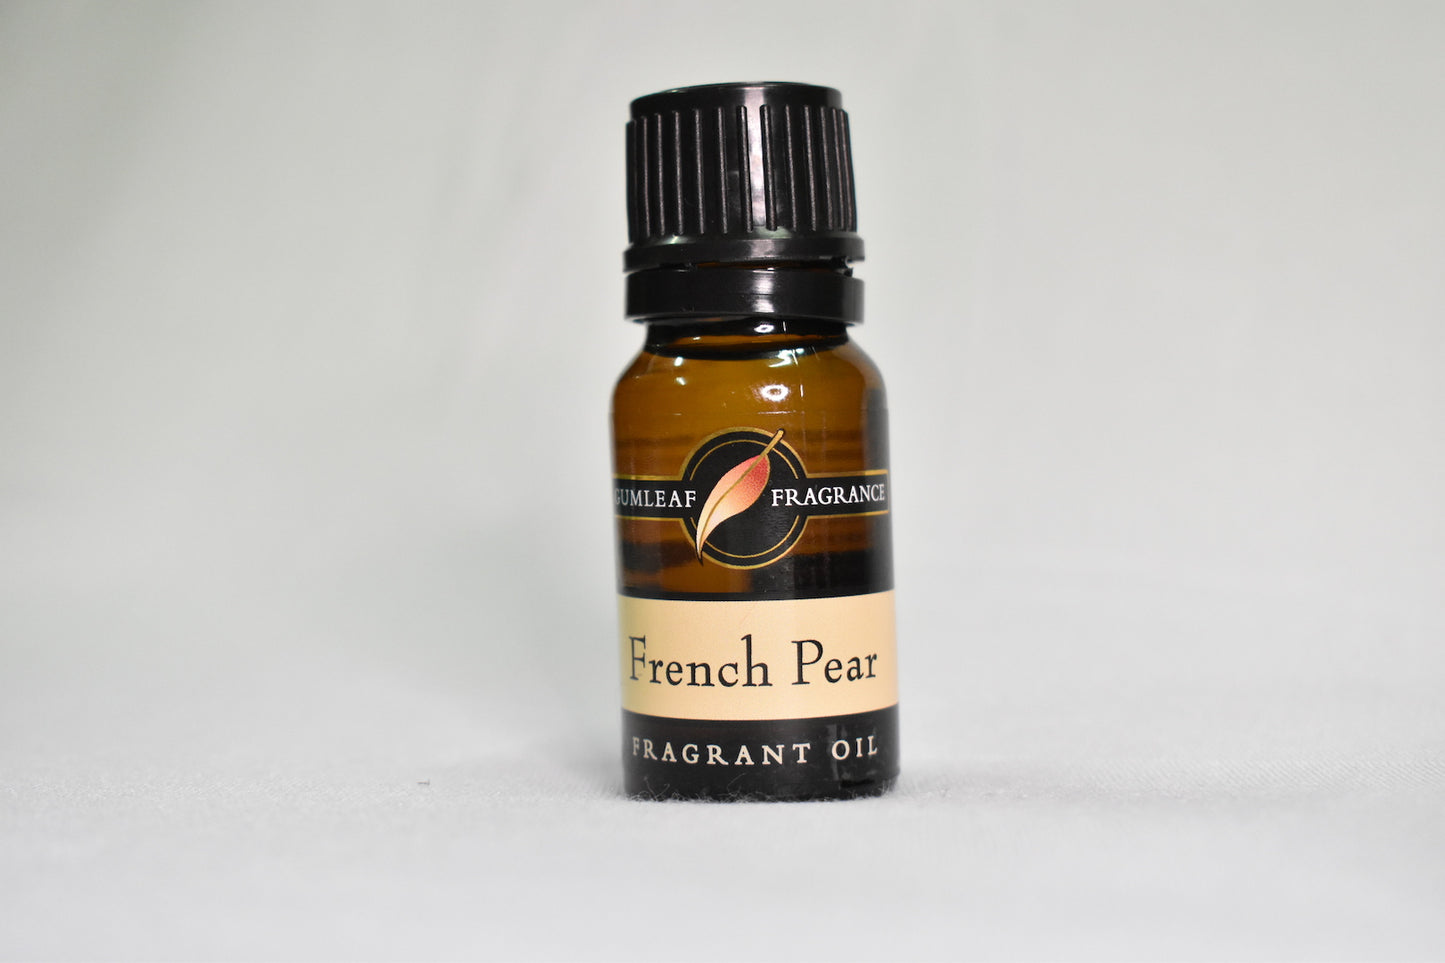 Gumleaf Fragrance - French Pear 10ml